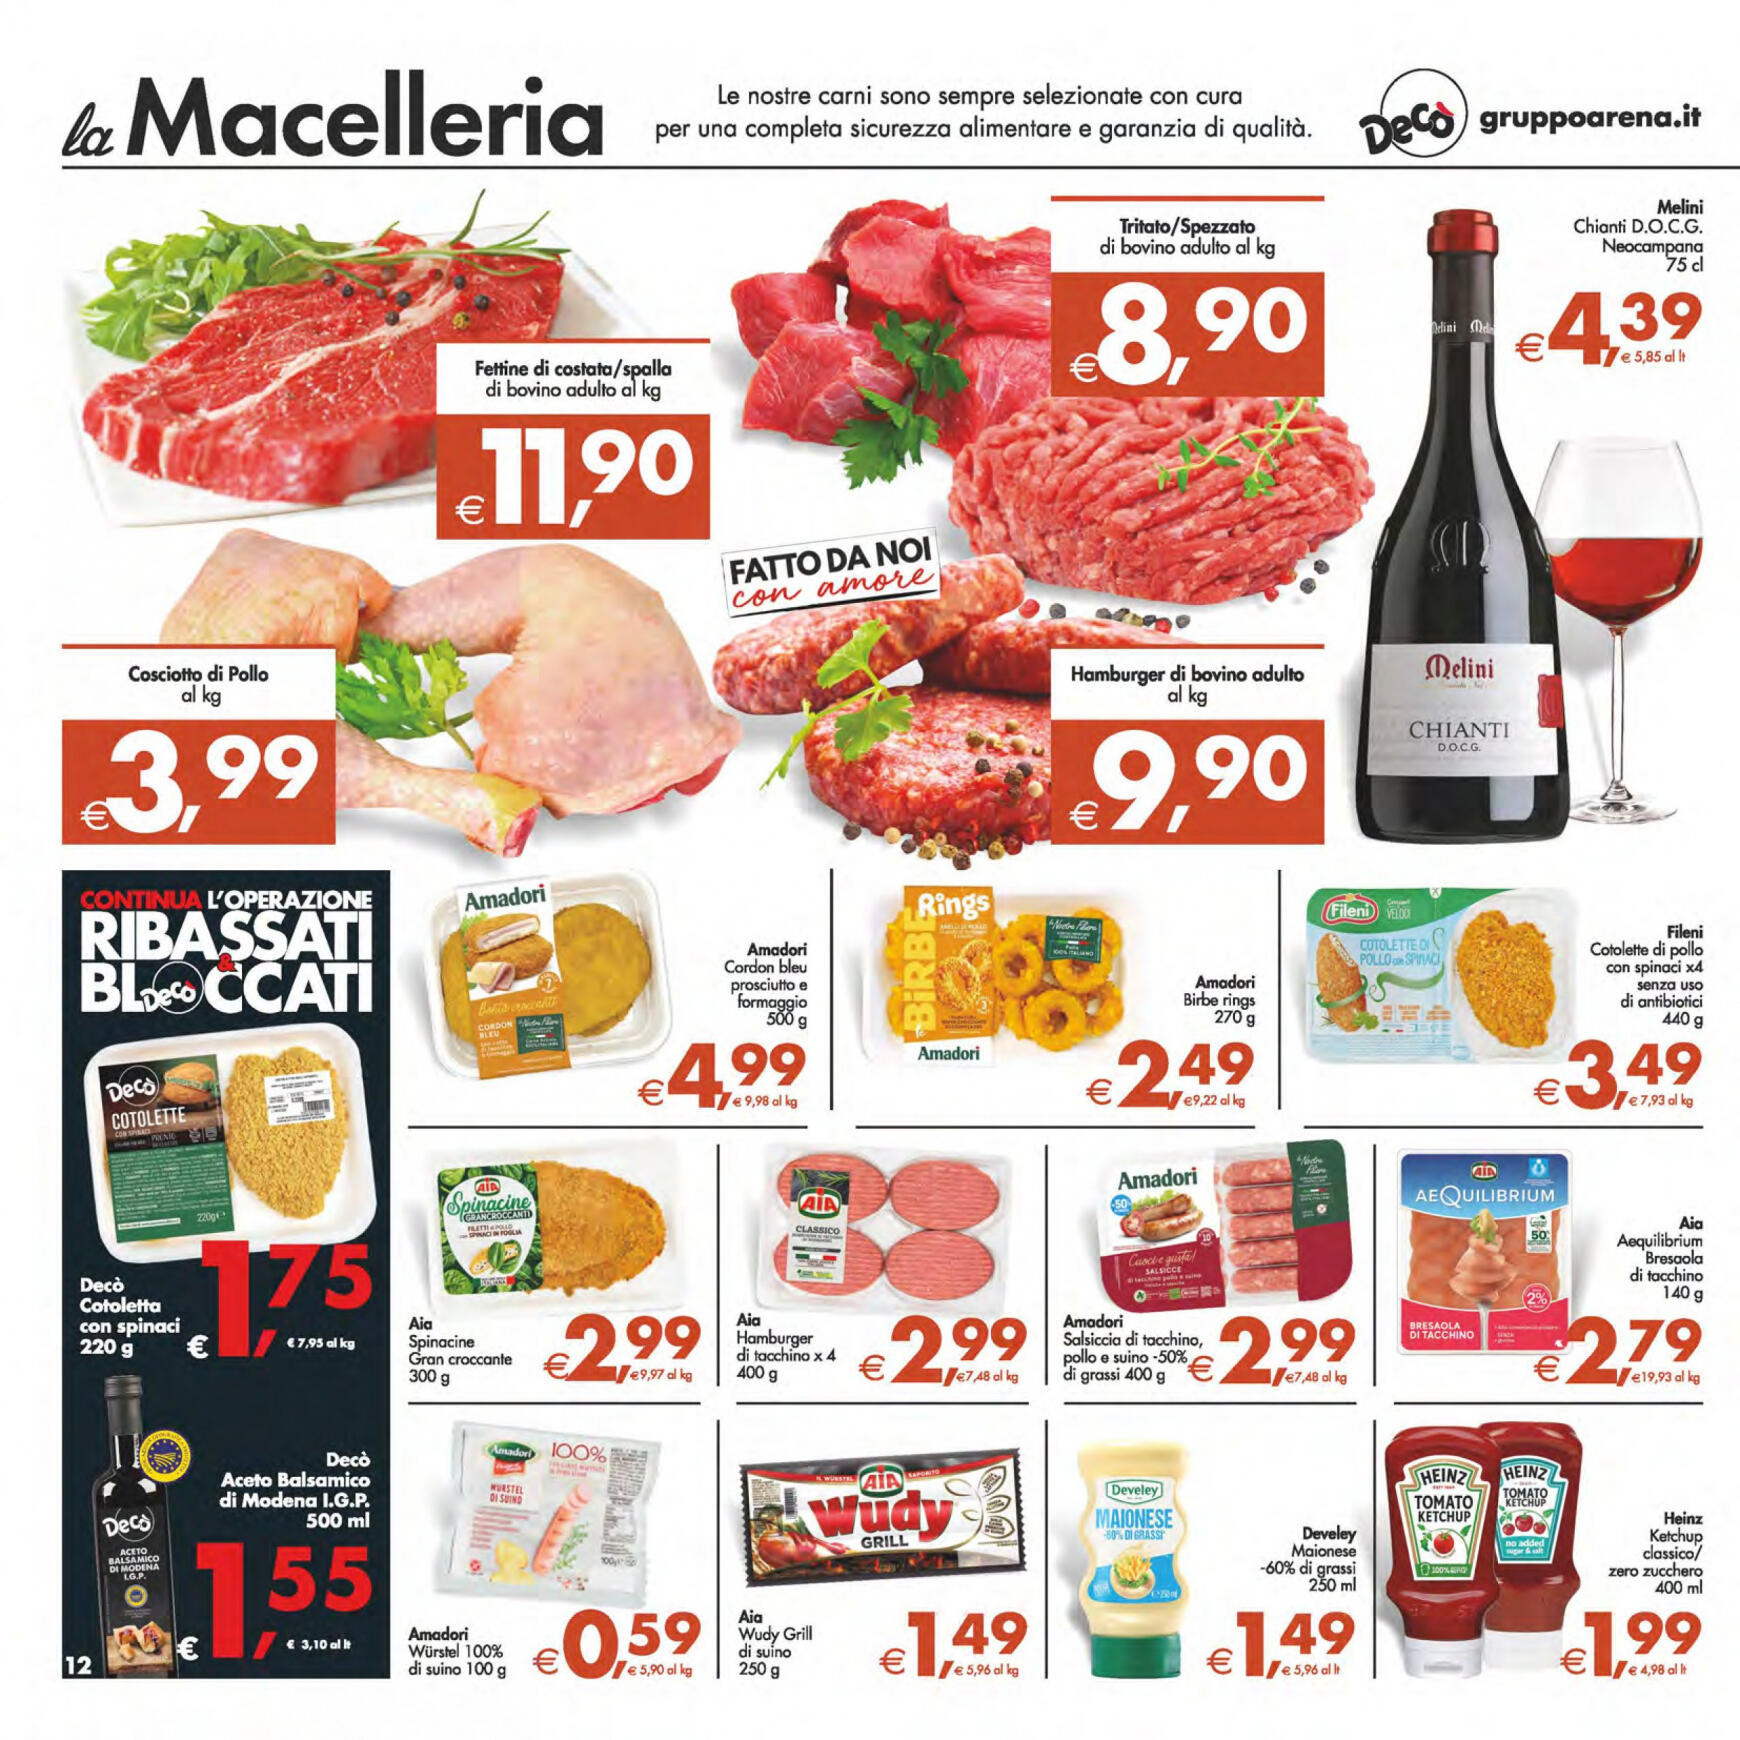 deco - Nuovo volantino Decò - Maxistore/Supermercati/Local 14.05. - 23.05. - page: 12